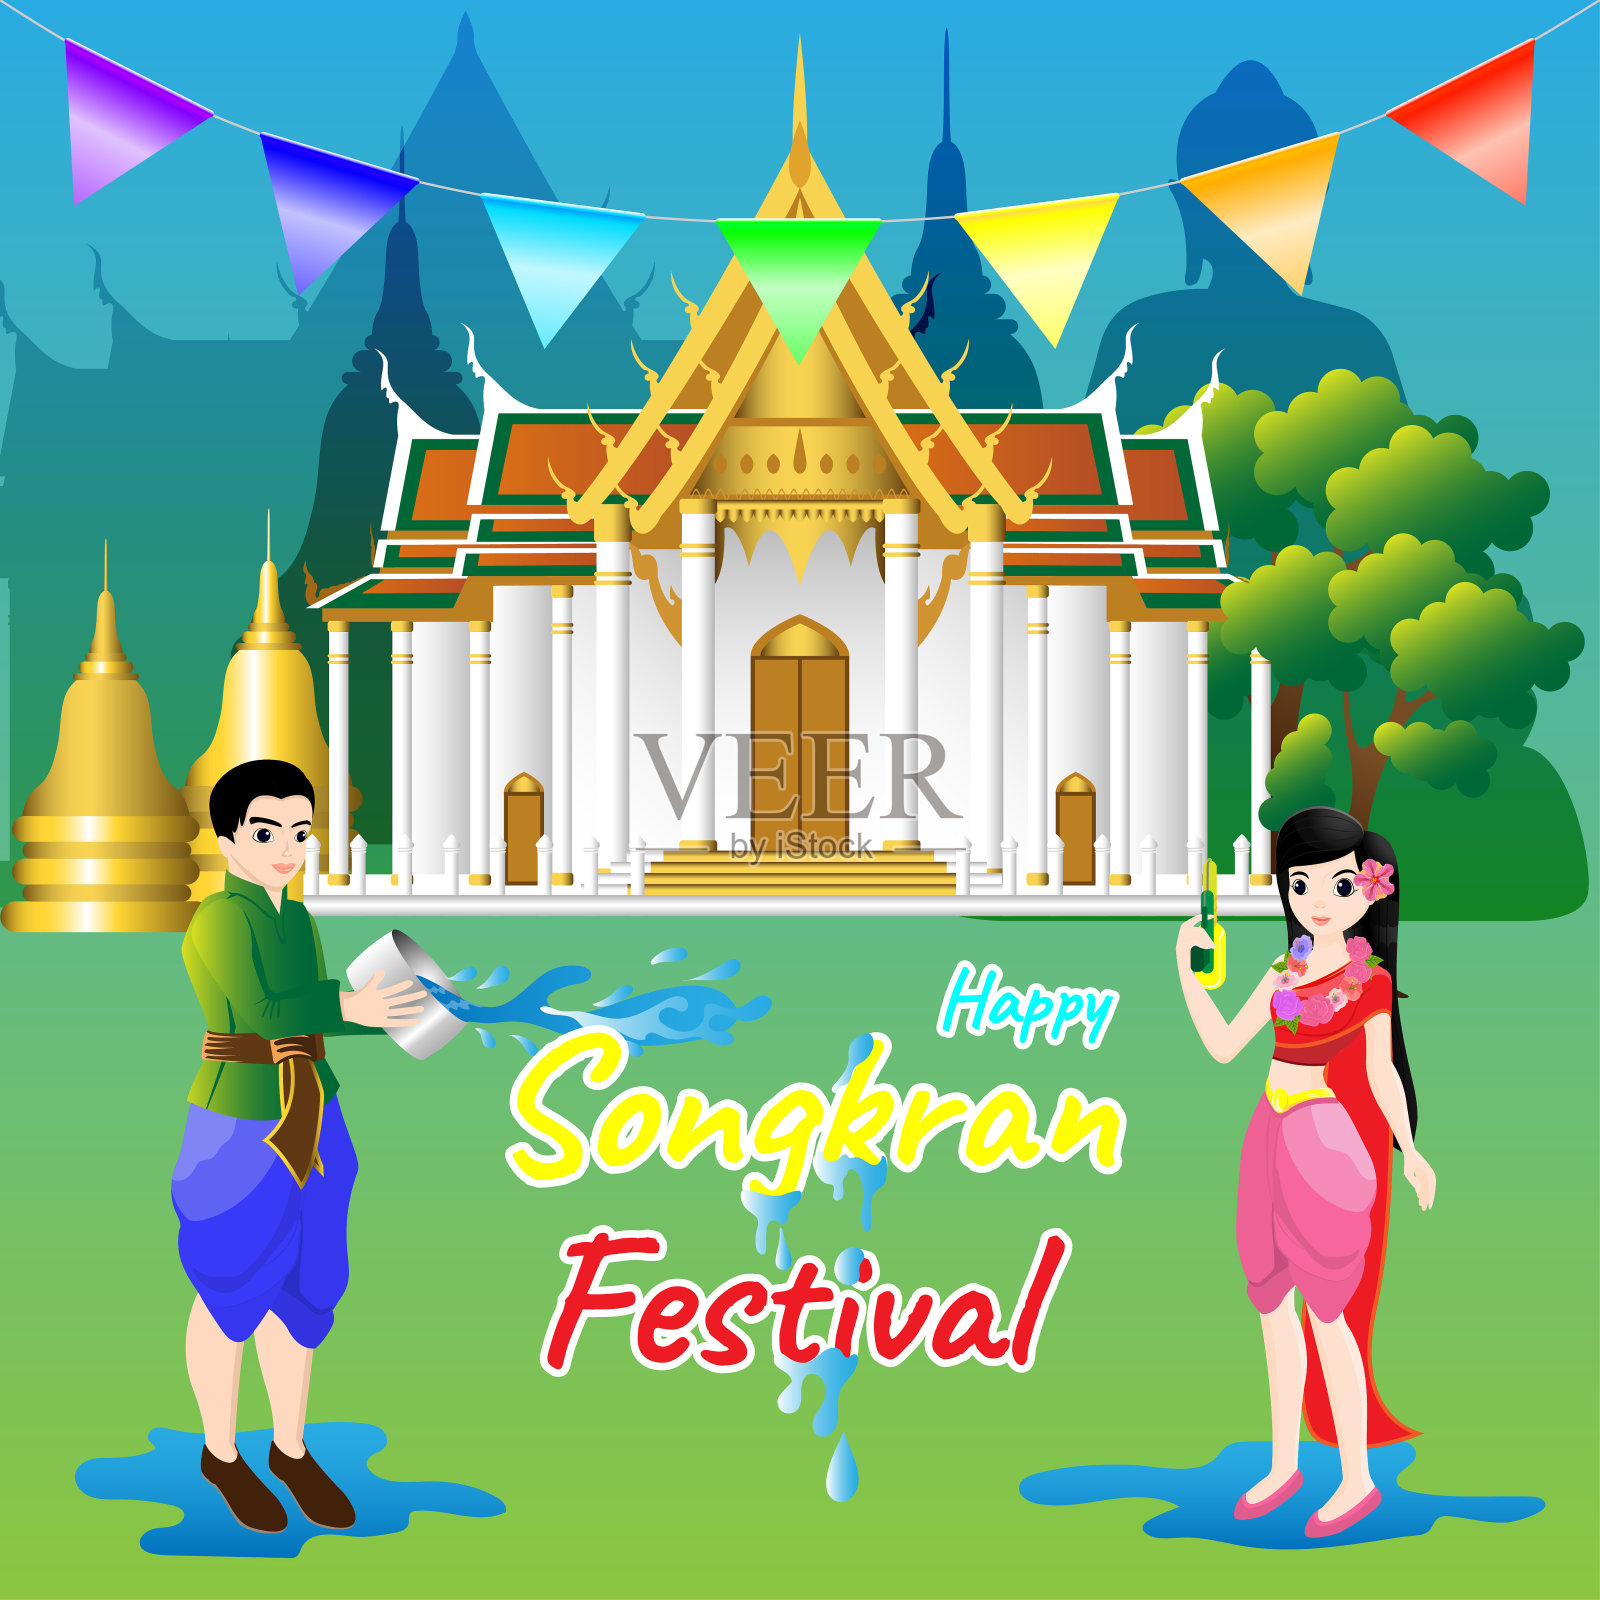 泰国泼水节吸引大量游客 微笑之国的旅游业再次繁荣 - 哔哩哔哩